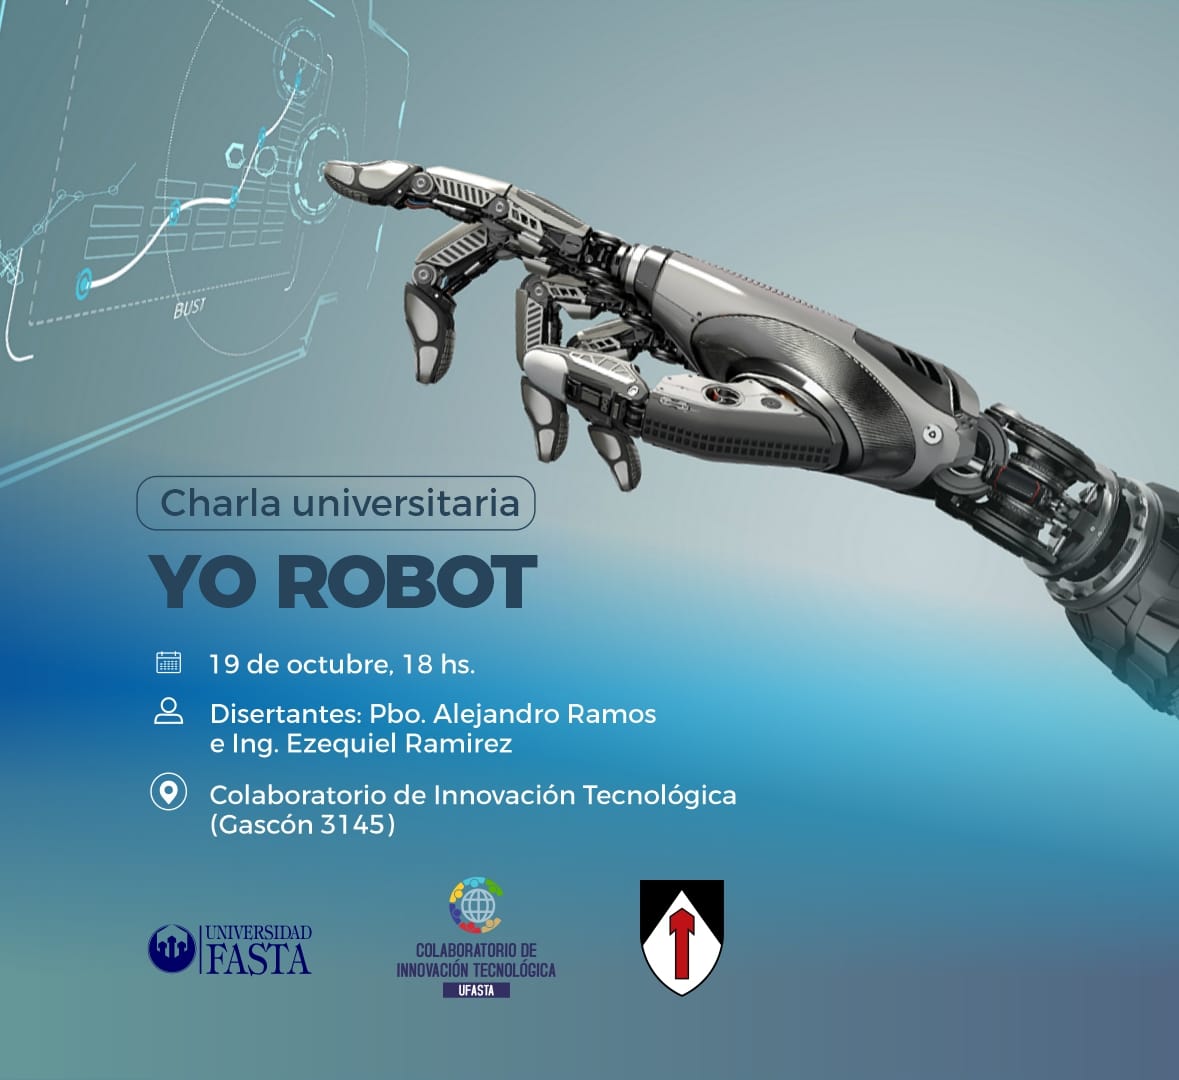 Charla Universitaria "Yo Robot"